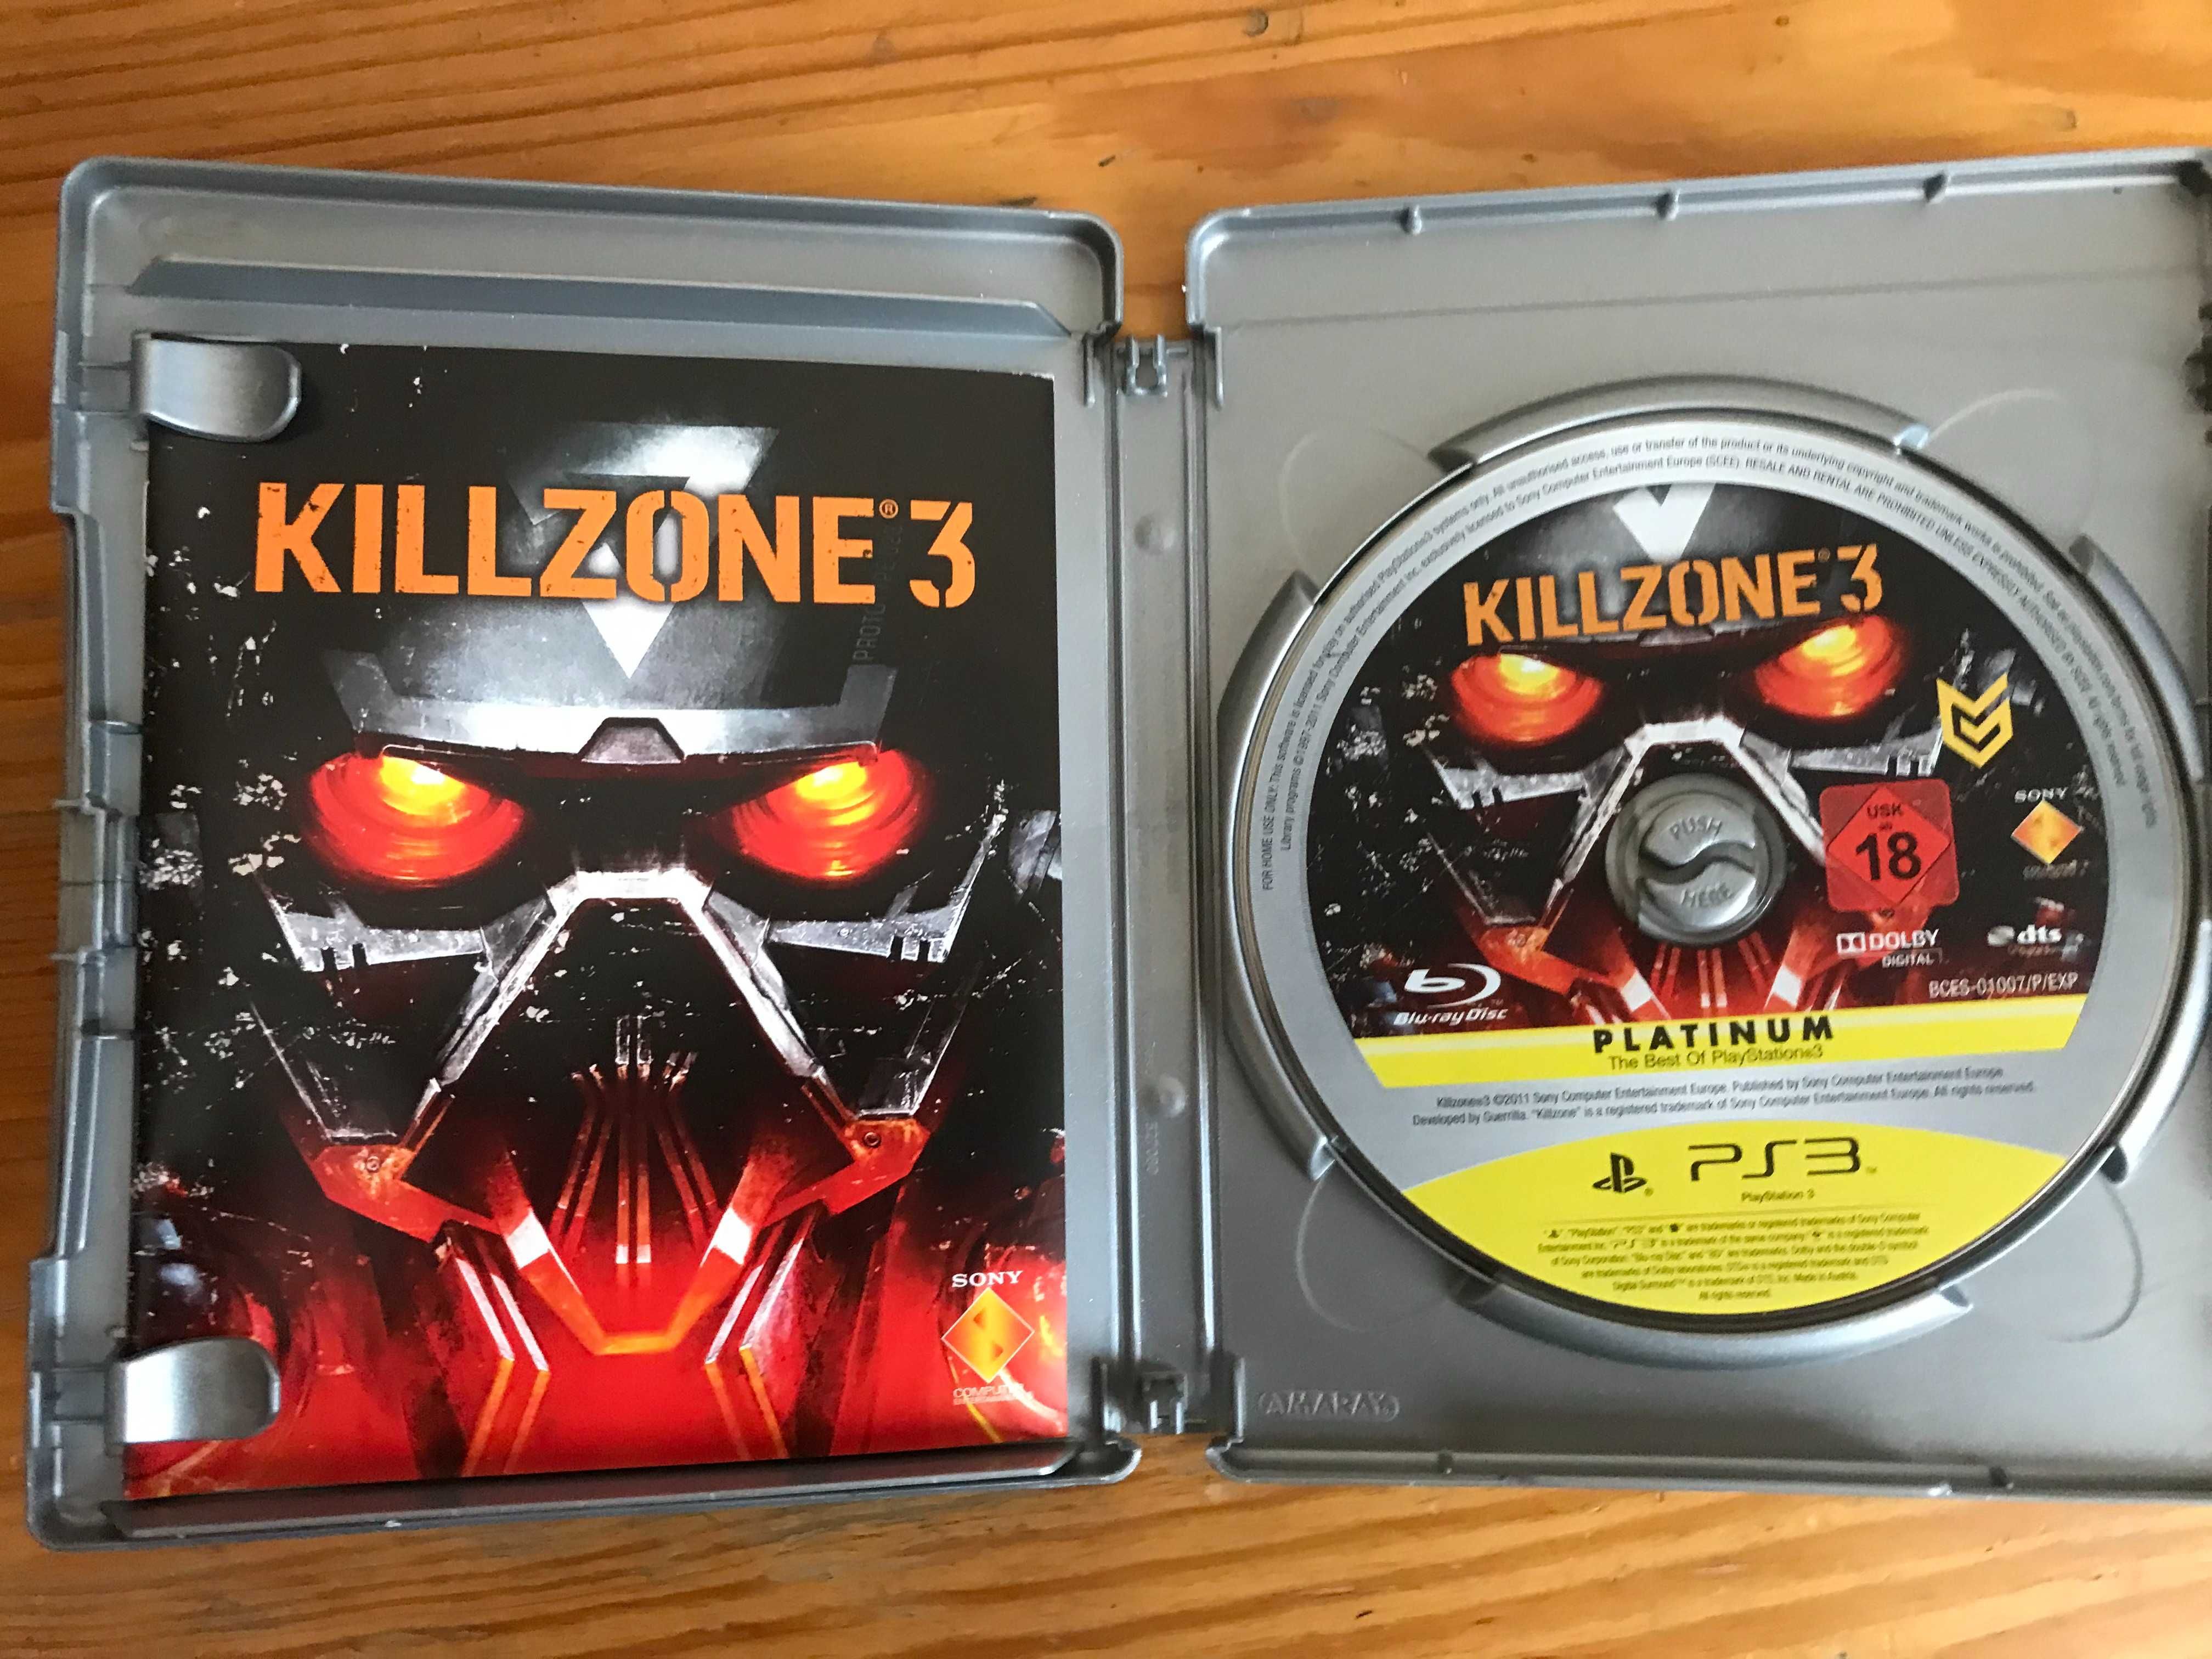 Gra " Killzone 3 " - na PS3